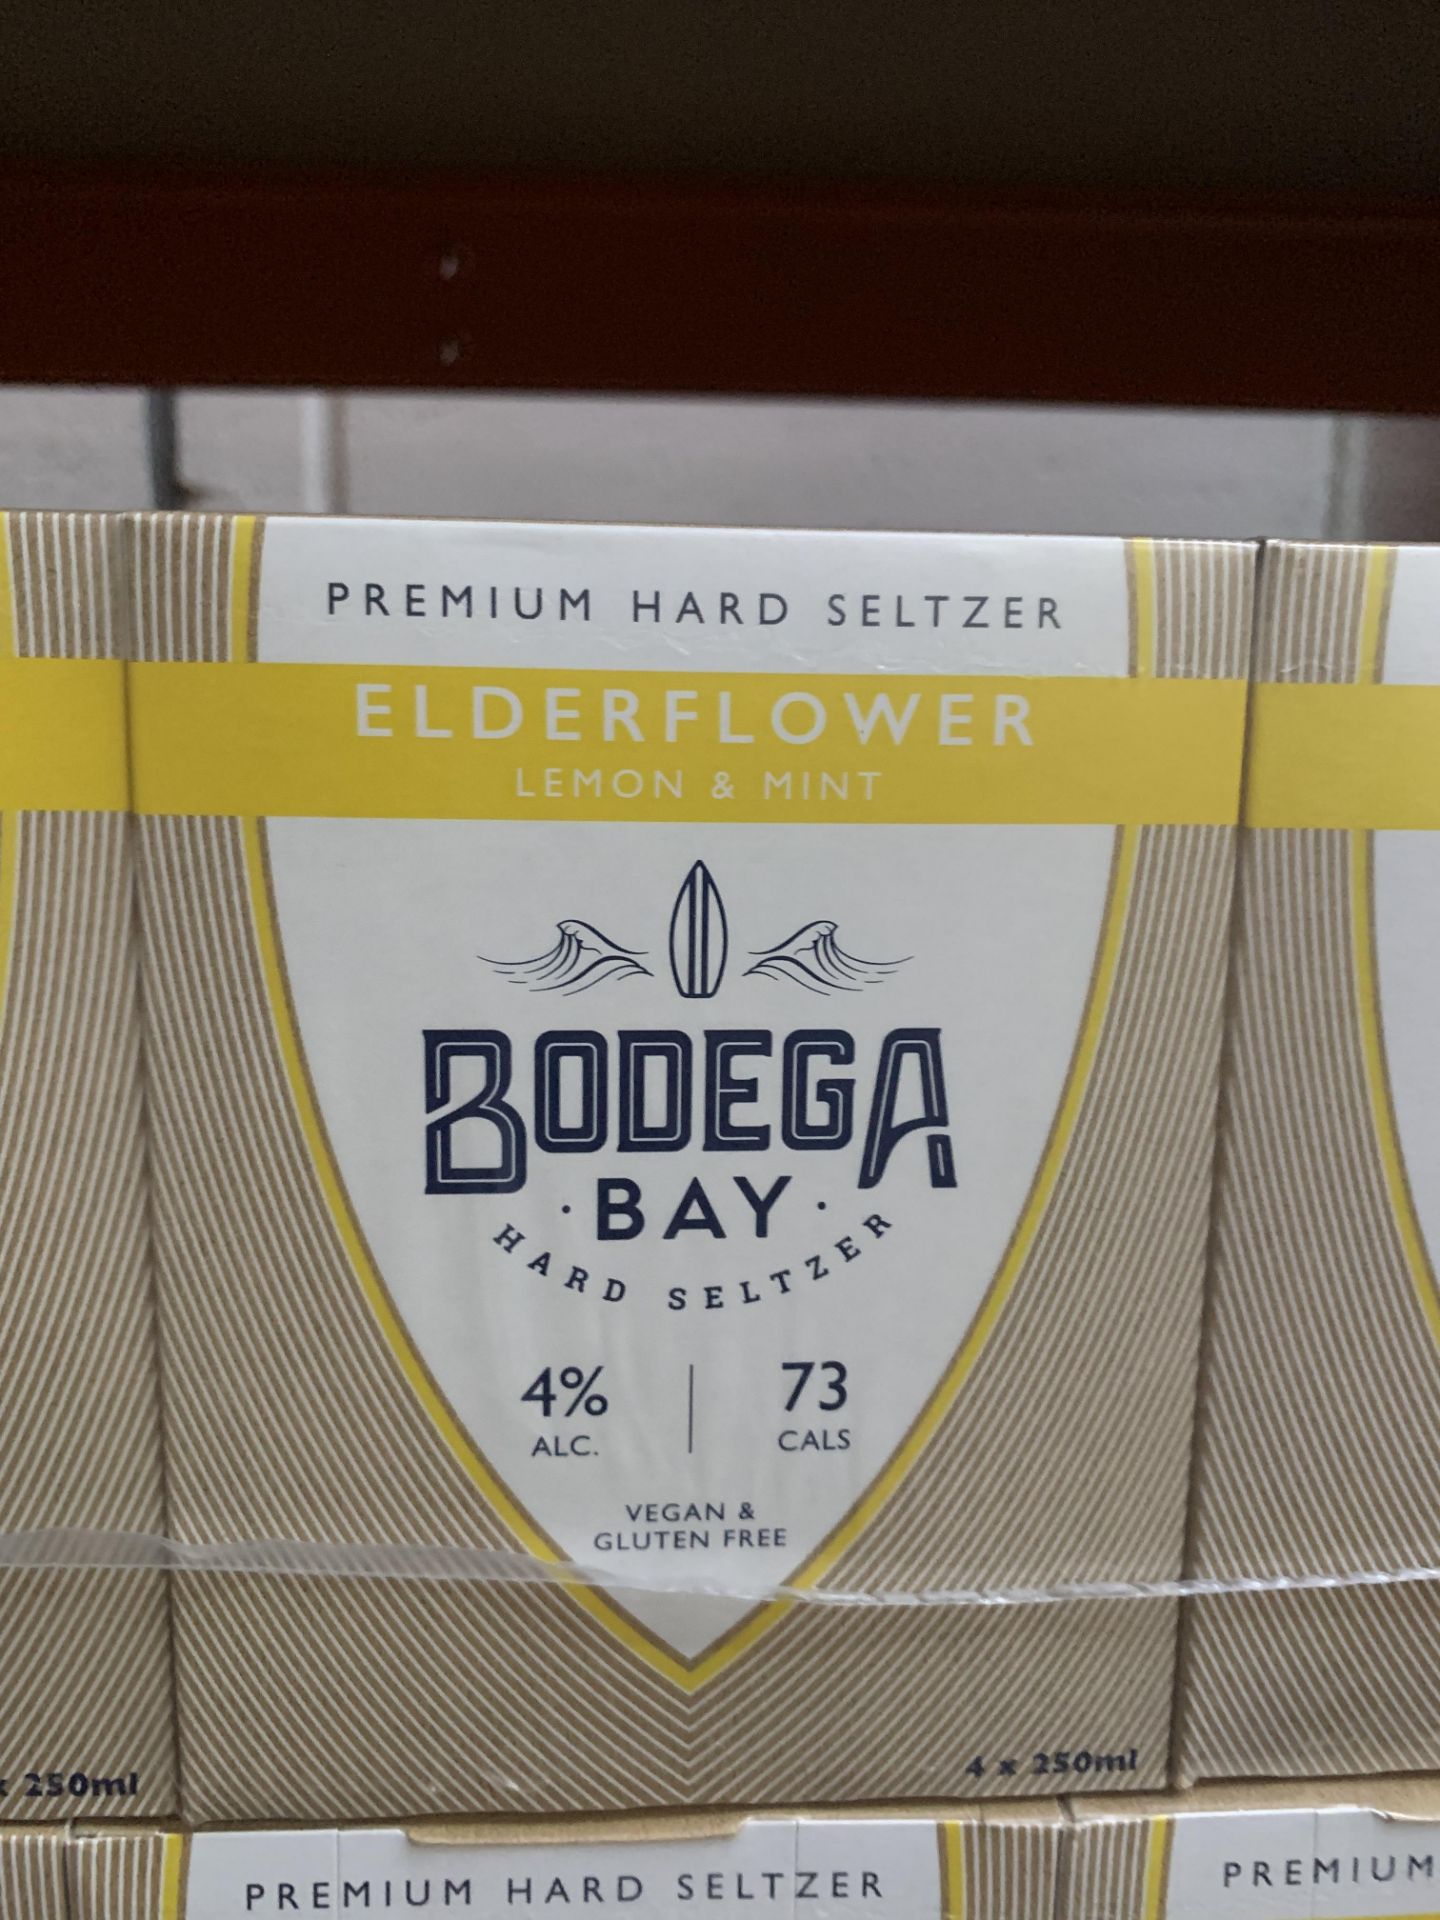 10x Packs (240x Cans) of Bodega Bay Elderflower, Lemon & Mint Premium Hard Seltzer, 250ml, 4% Alc, 7 - Image 2 of 2